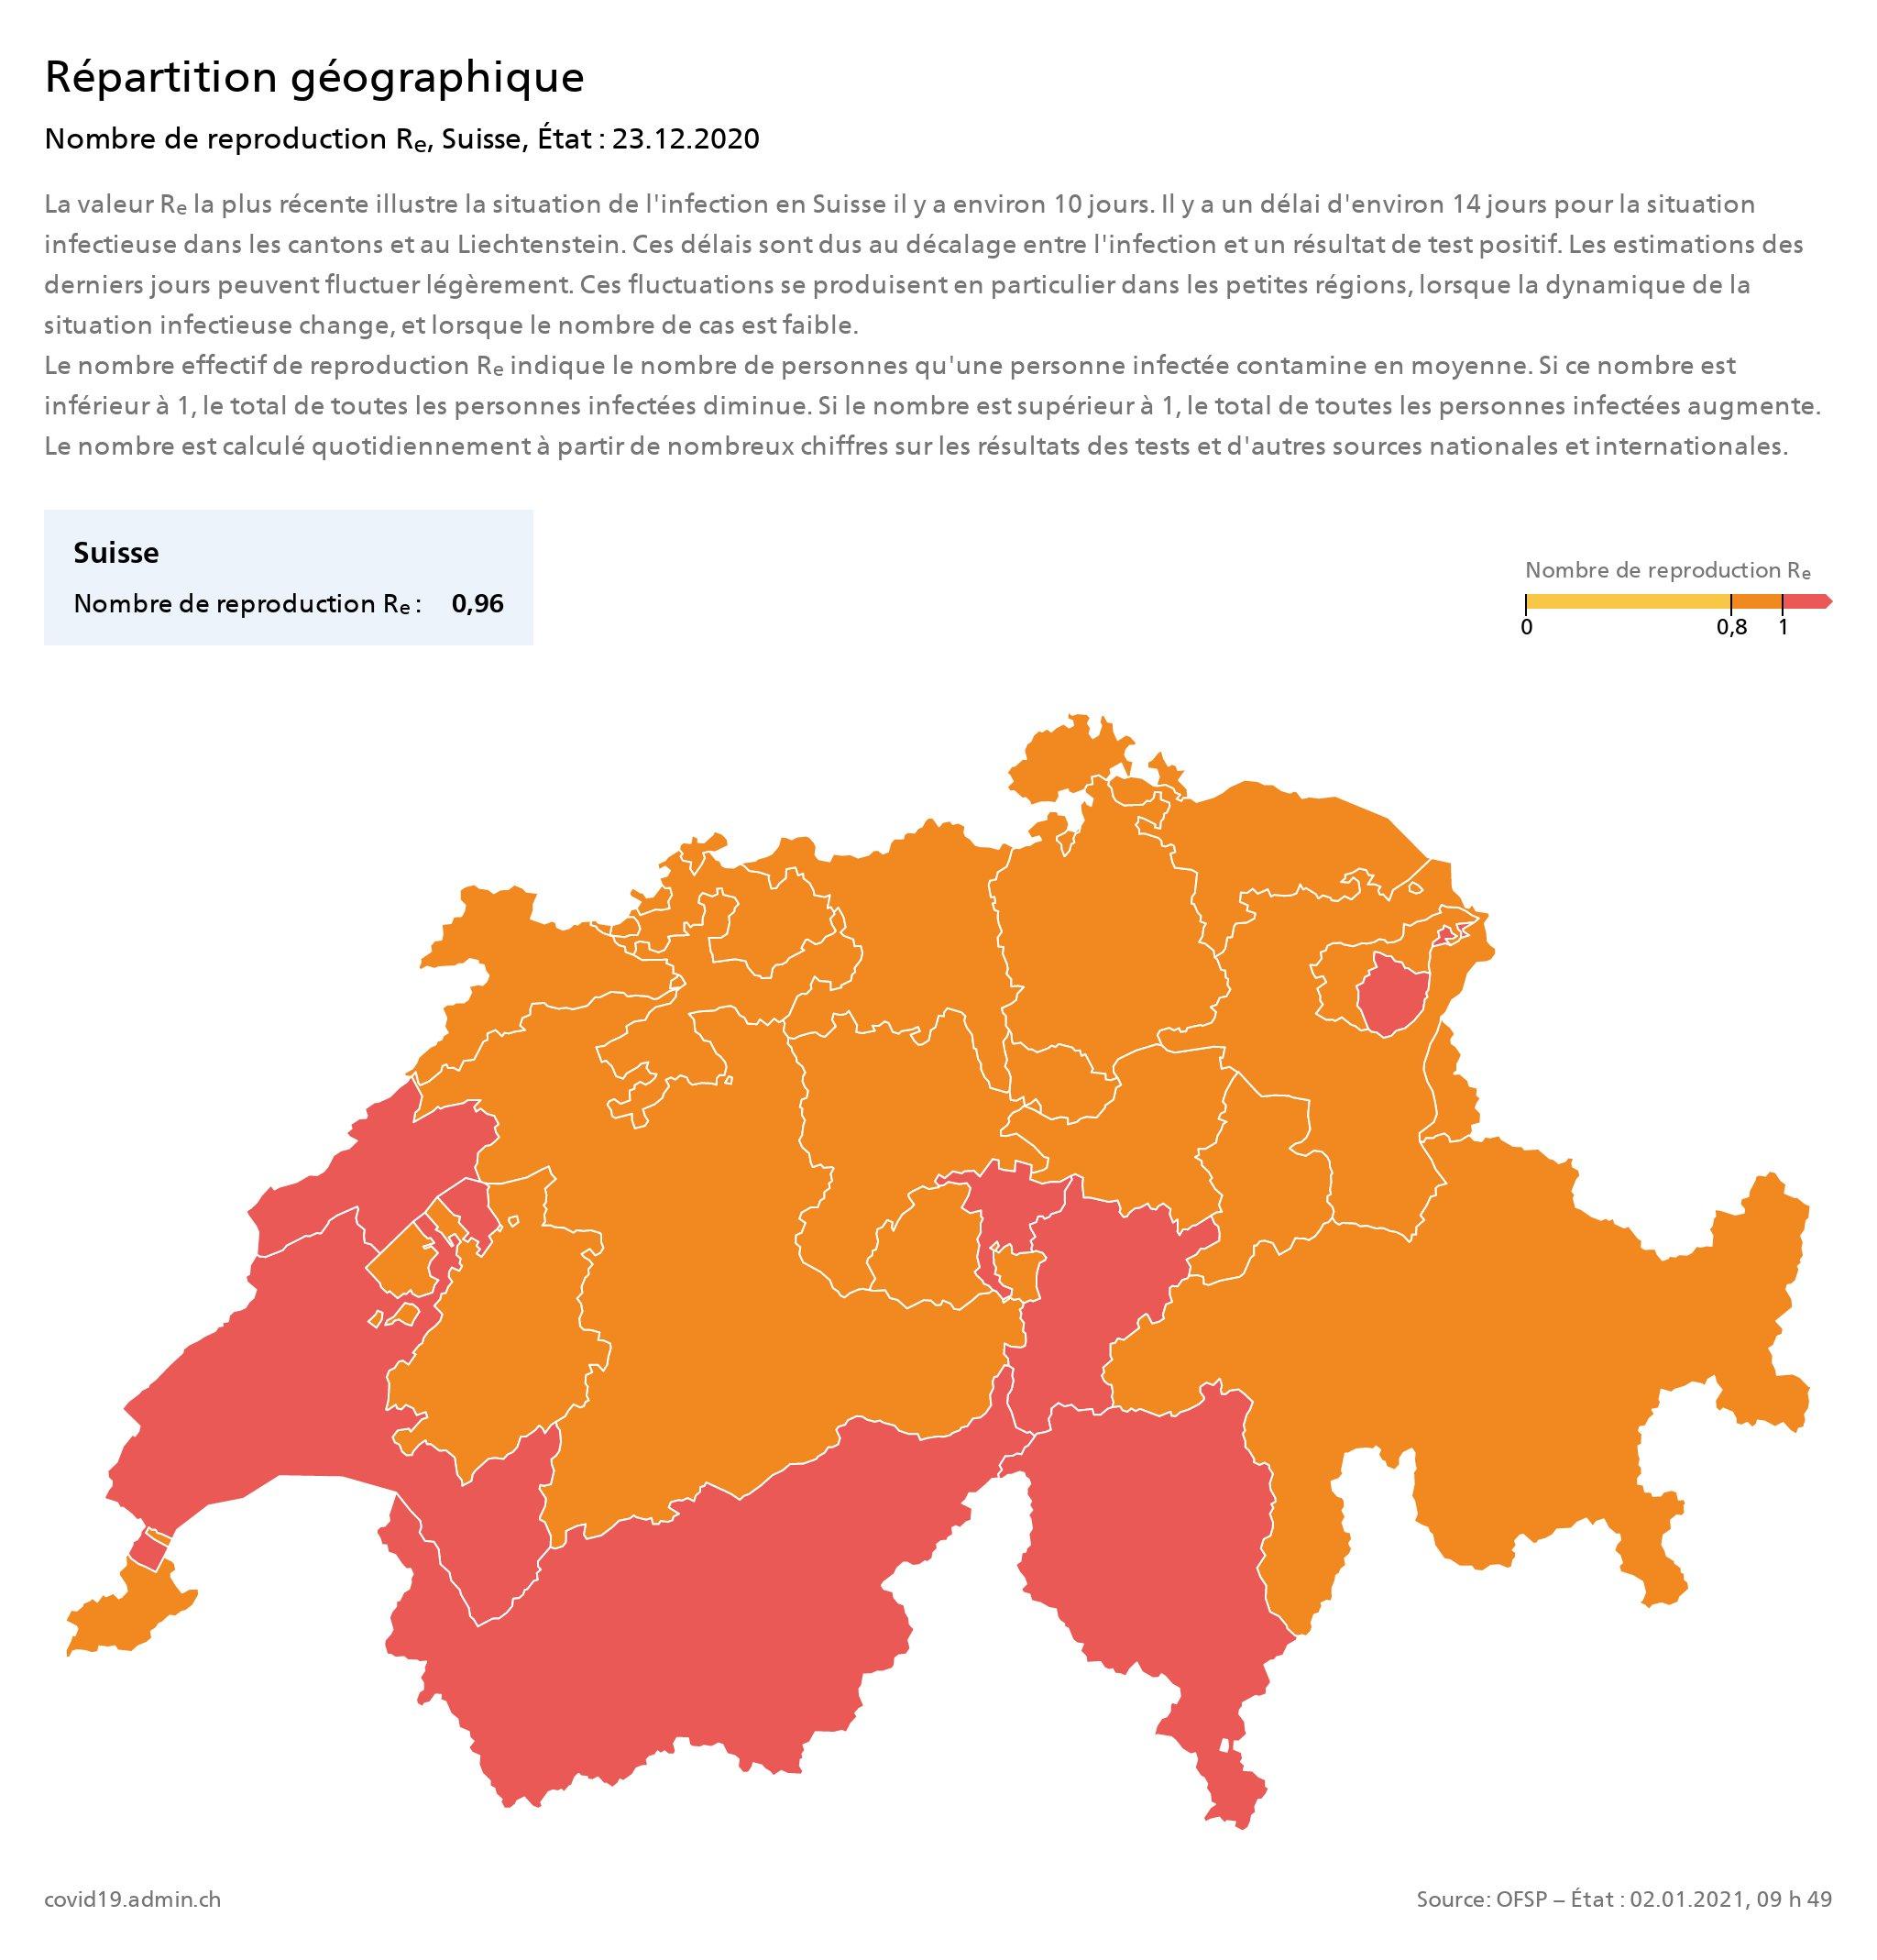 Répartition géographique – Nombre de reproduction Re, Suisse, état au 23 décembre 2020. [OFSP]